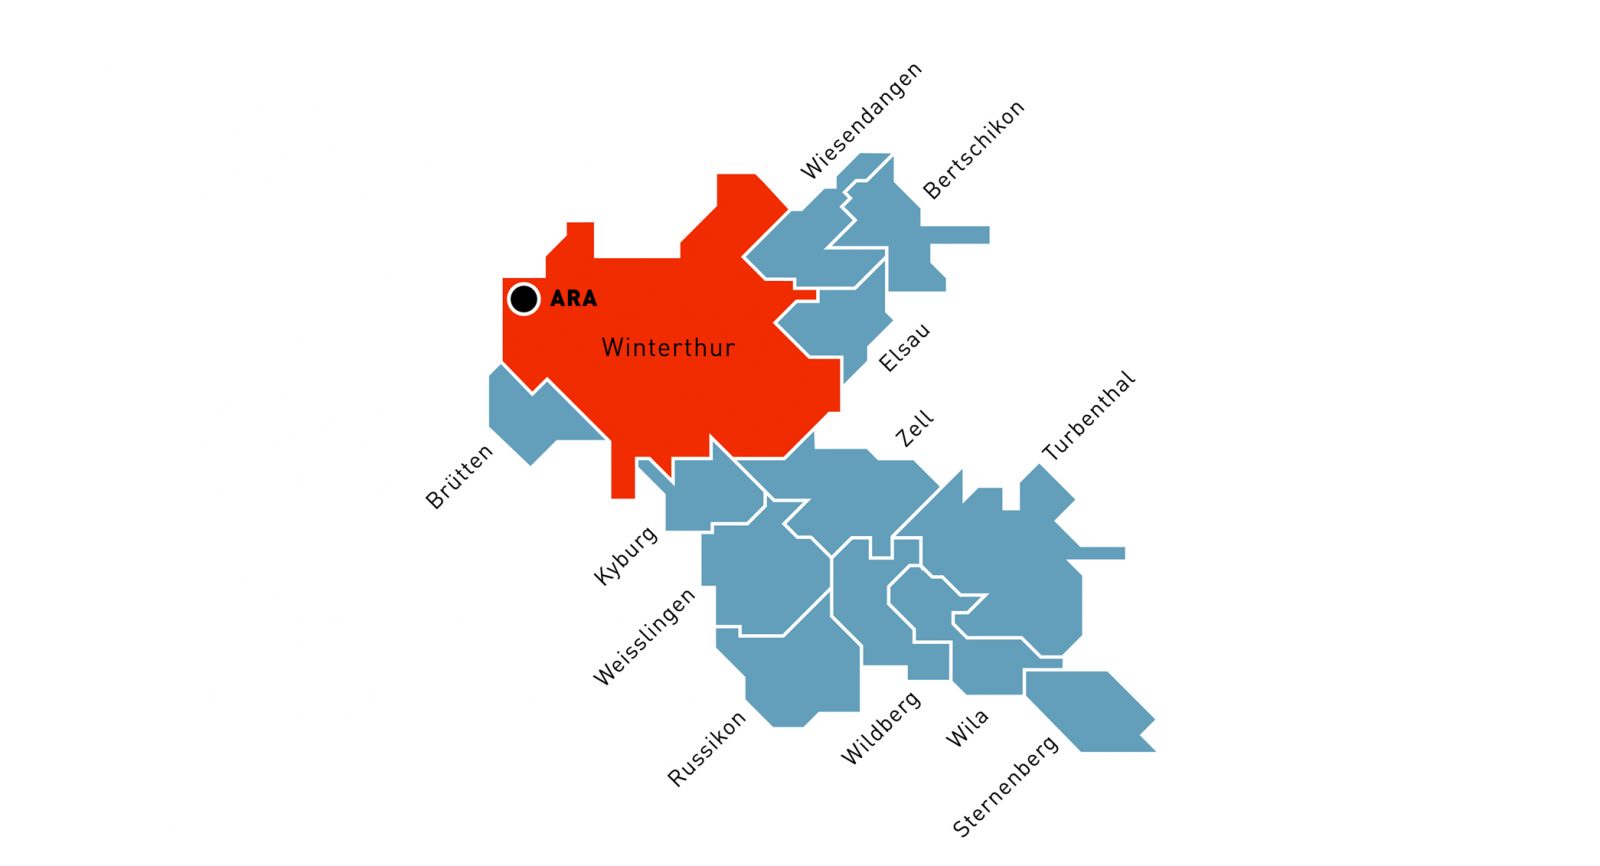 Das Einzugsgebiet der ARA in der Hard umfasst neben der Stadt Winterthur noch 12 weitere Gemeinden der Region. (Bild: Stadtwerk Winterthur)